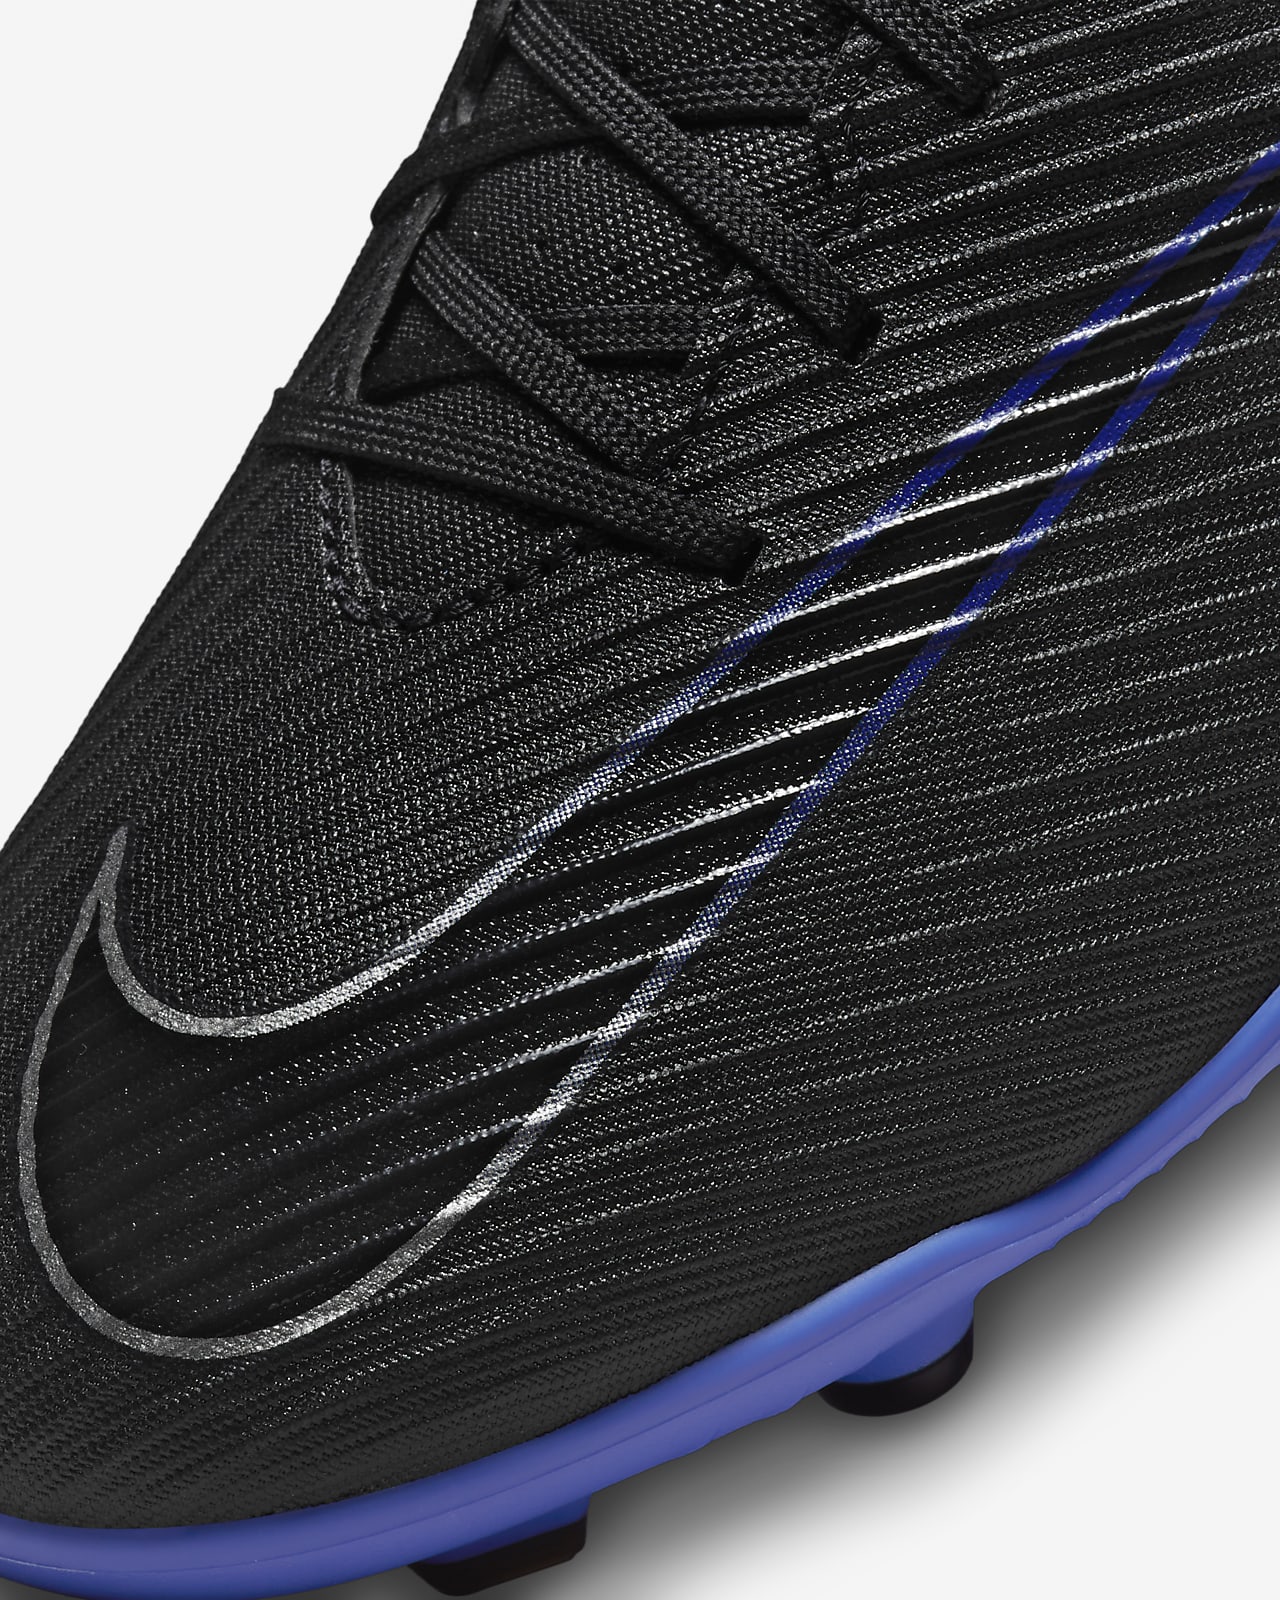 Chaussure de foot en salle basse Nike Mercurial Vapor 15 Club. Nike LU